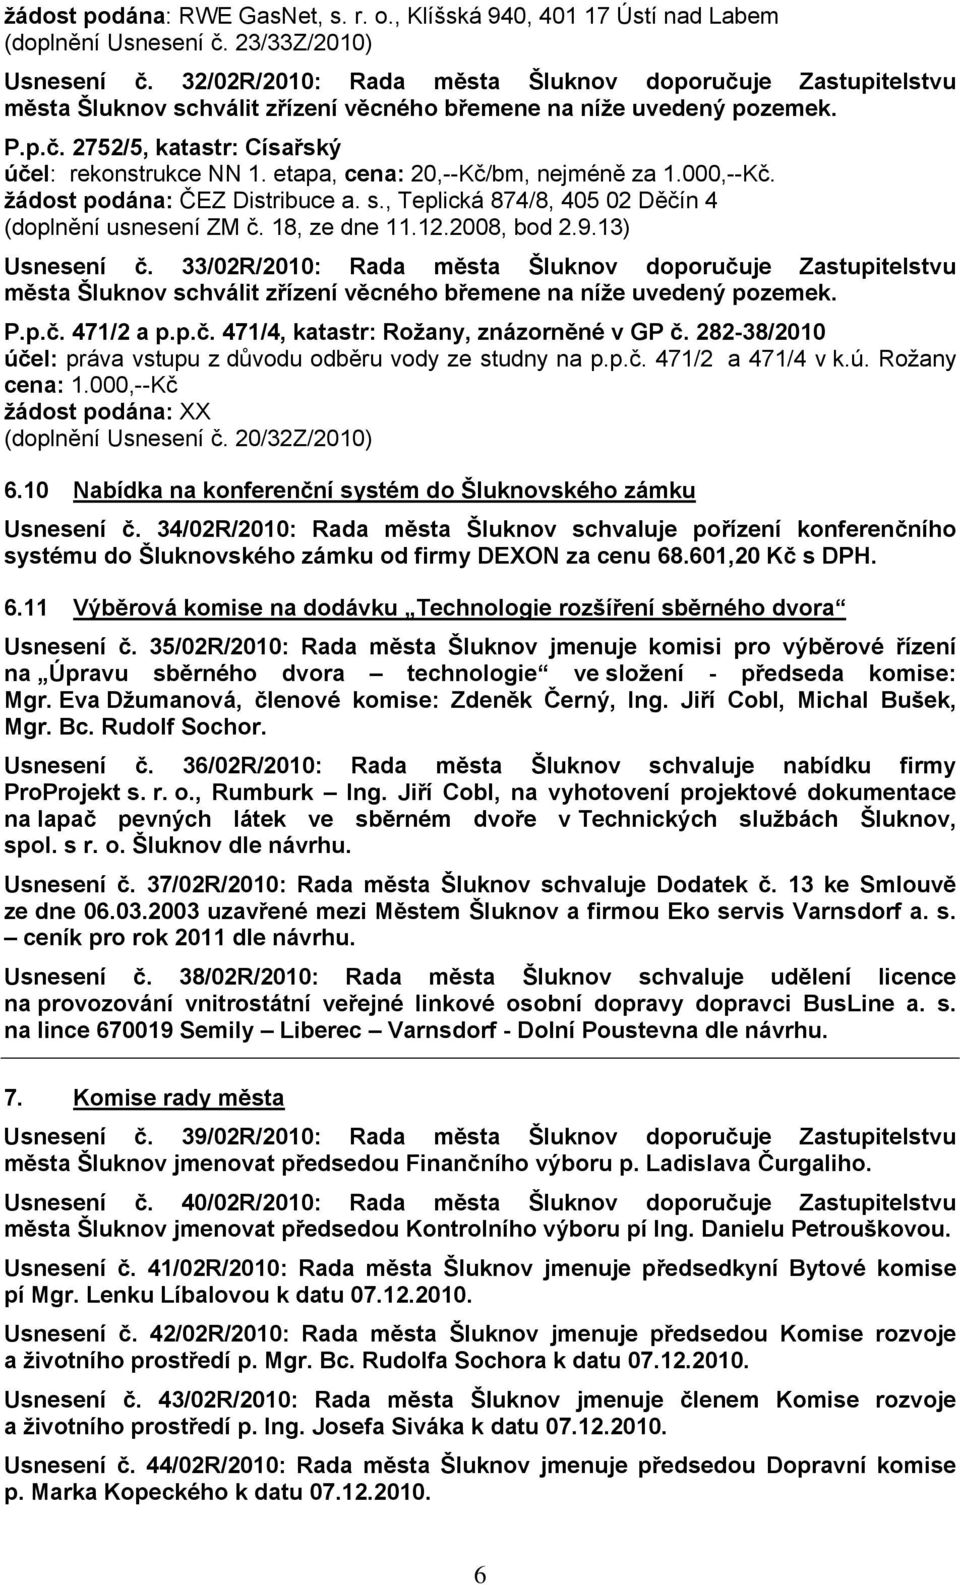 33/02R/2010: Rada města Šluknov doporučuje Zastupitelstvu P.p.č. 471/2 a p.p.č. 471/4, katastr: Rožany, znázorněné v GP č. 282-38/2010 účel: práva vstupu z důvodu odběru vody ze studny na p.p.č. 471/2 a 471/4 v k.